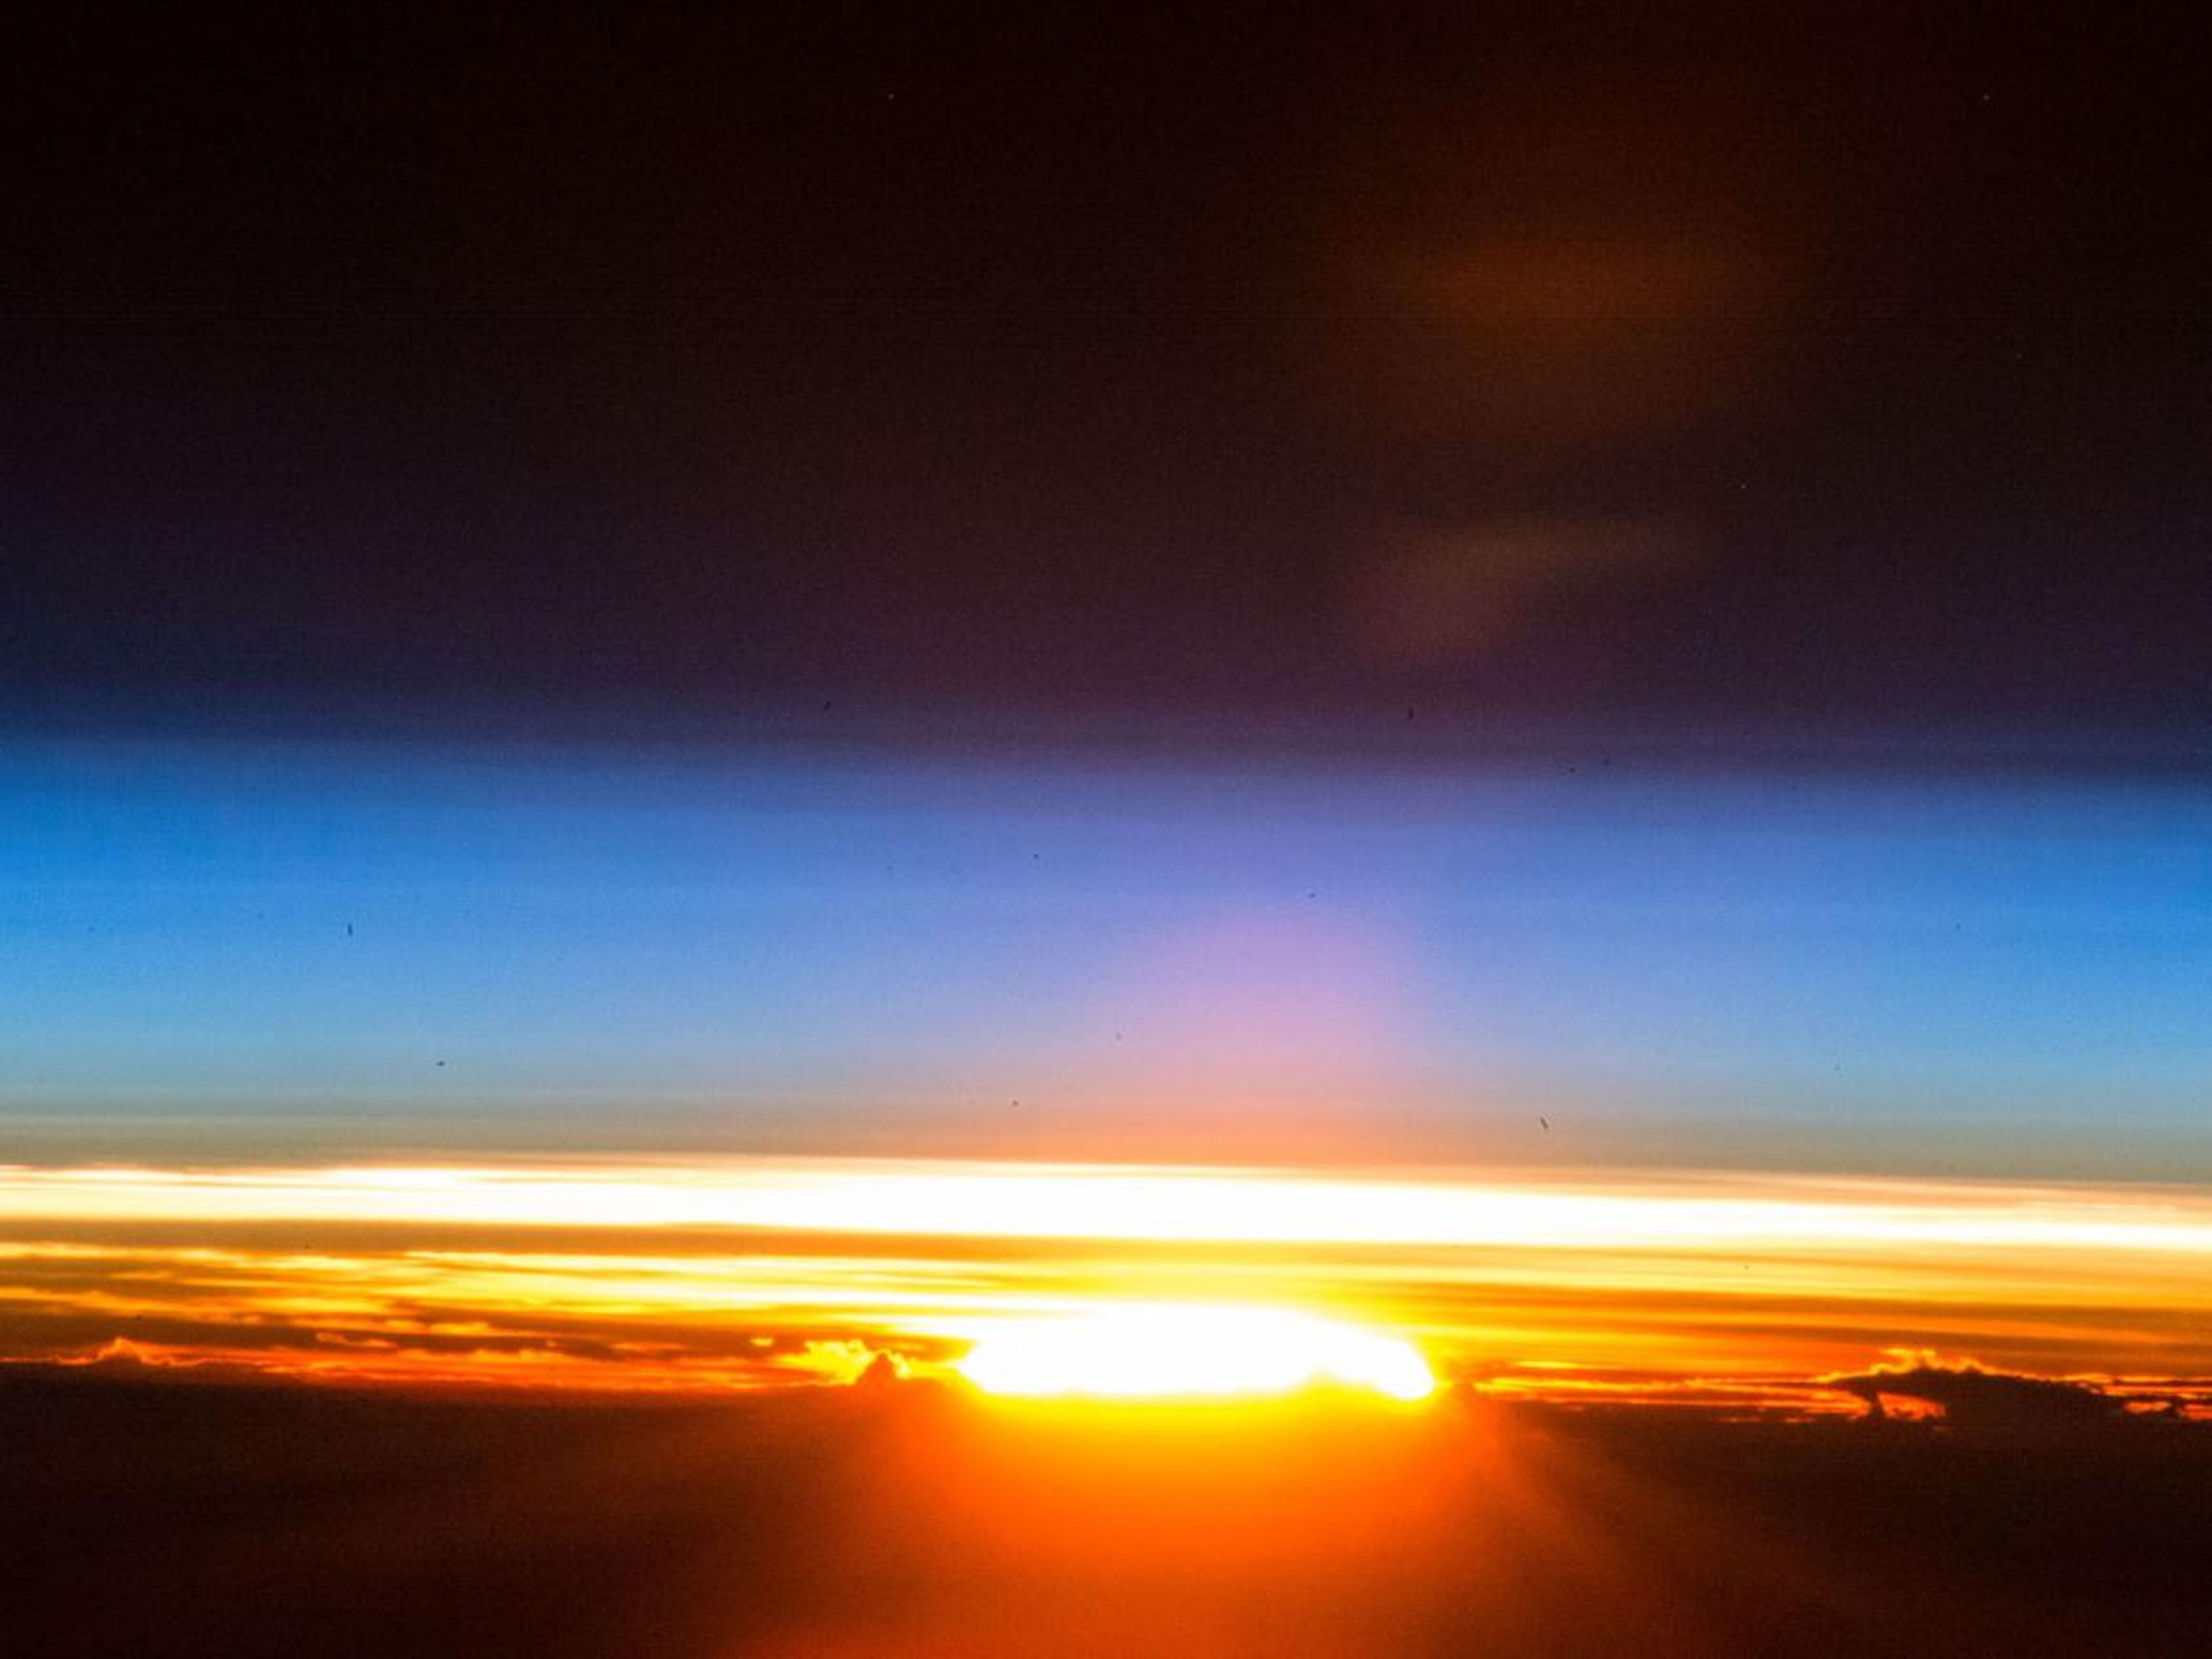 Un amanecer capturado desde la Estación Espacial Internacional. 25 de diciembre de 2017.